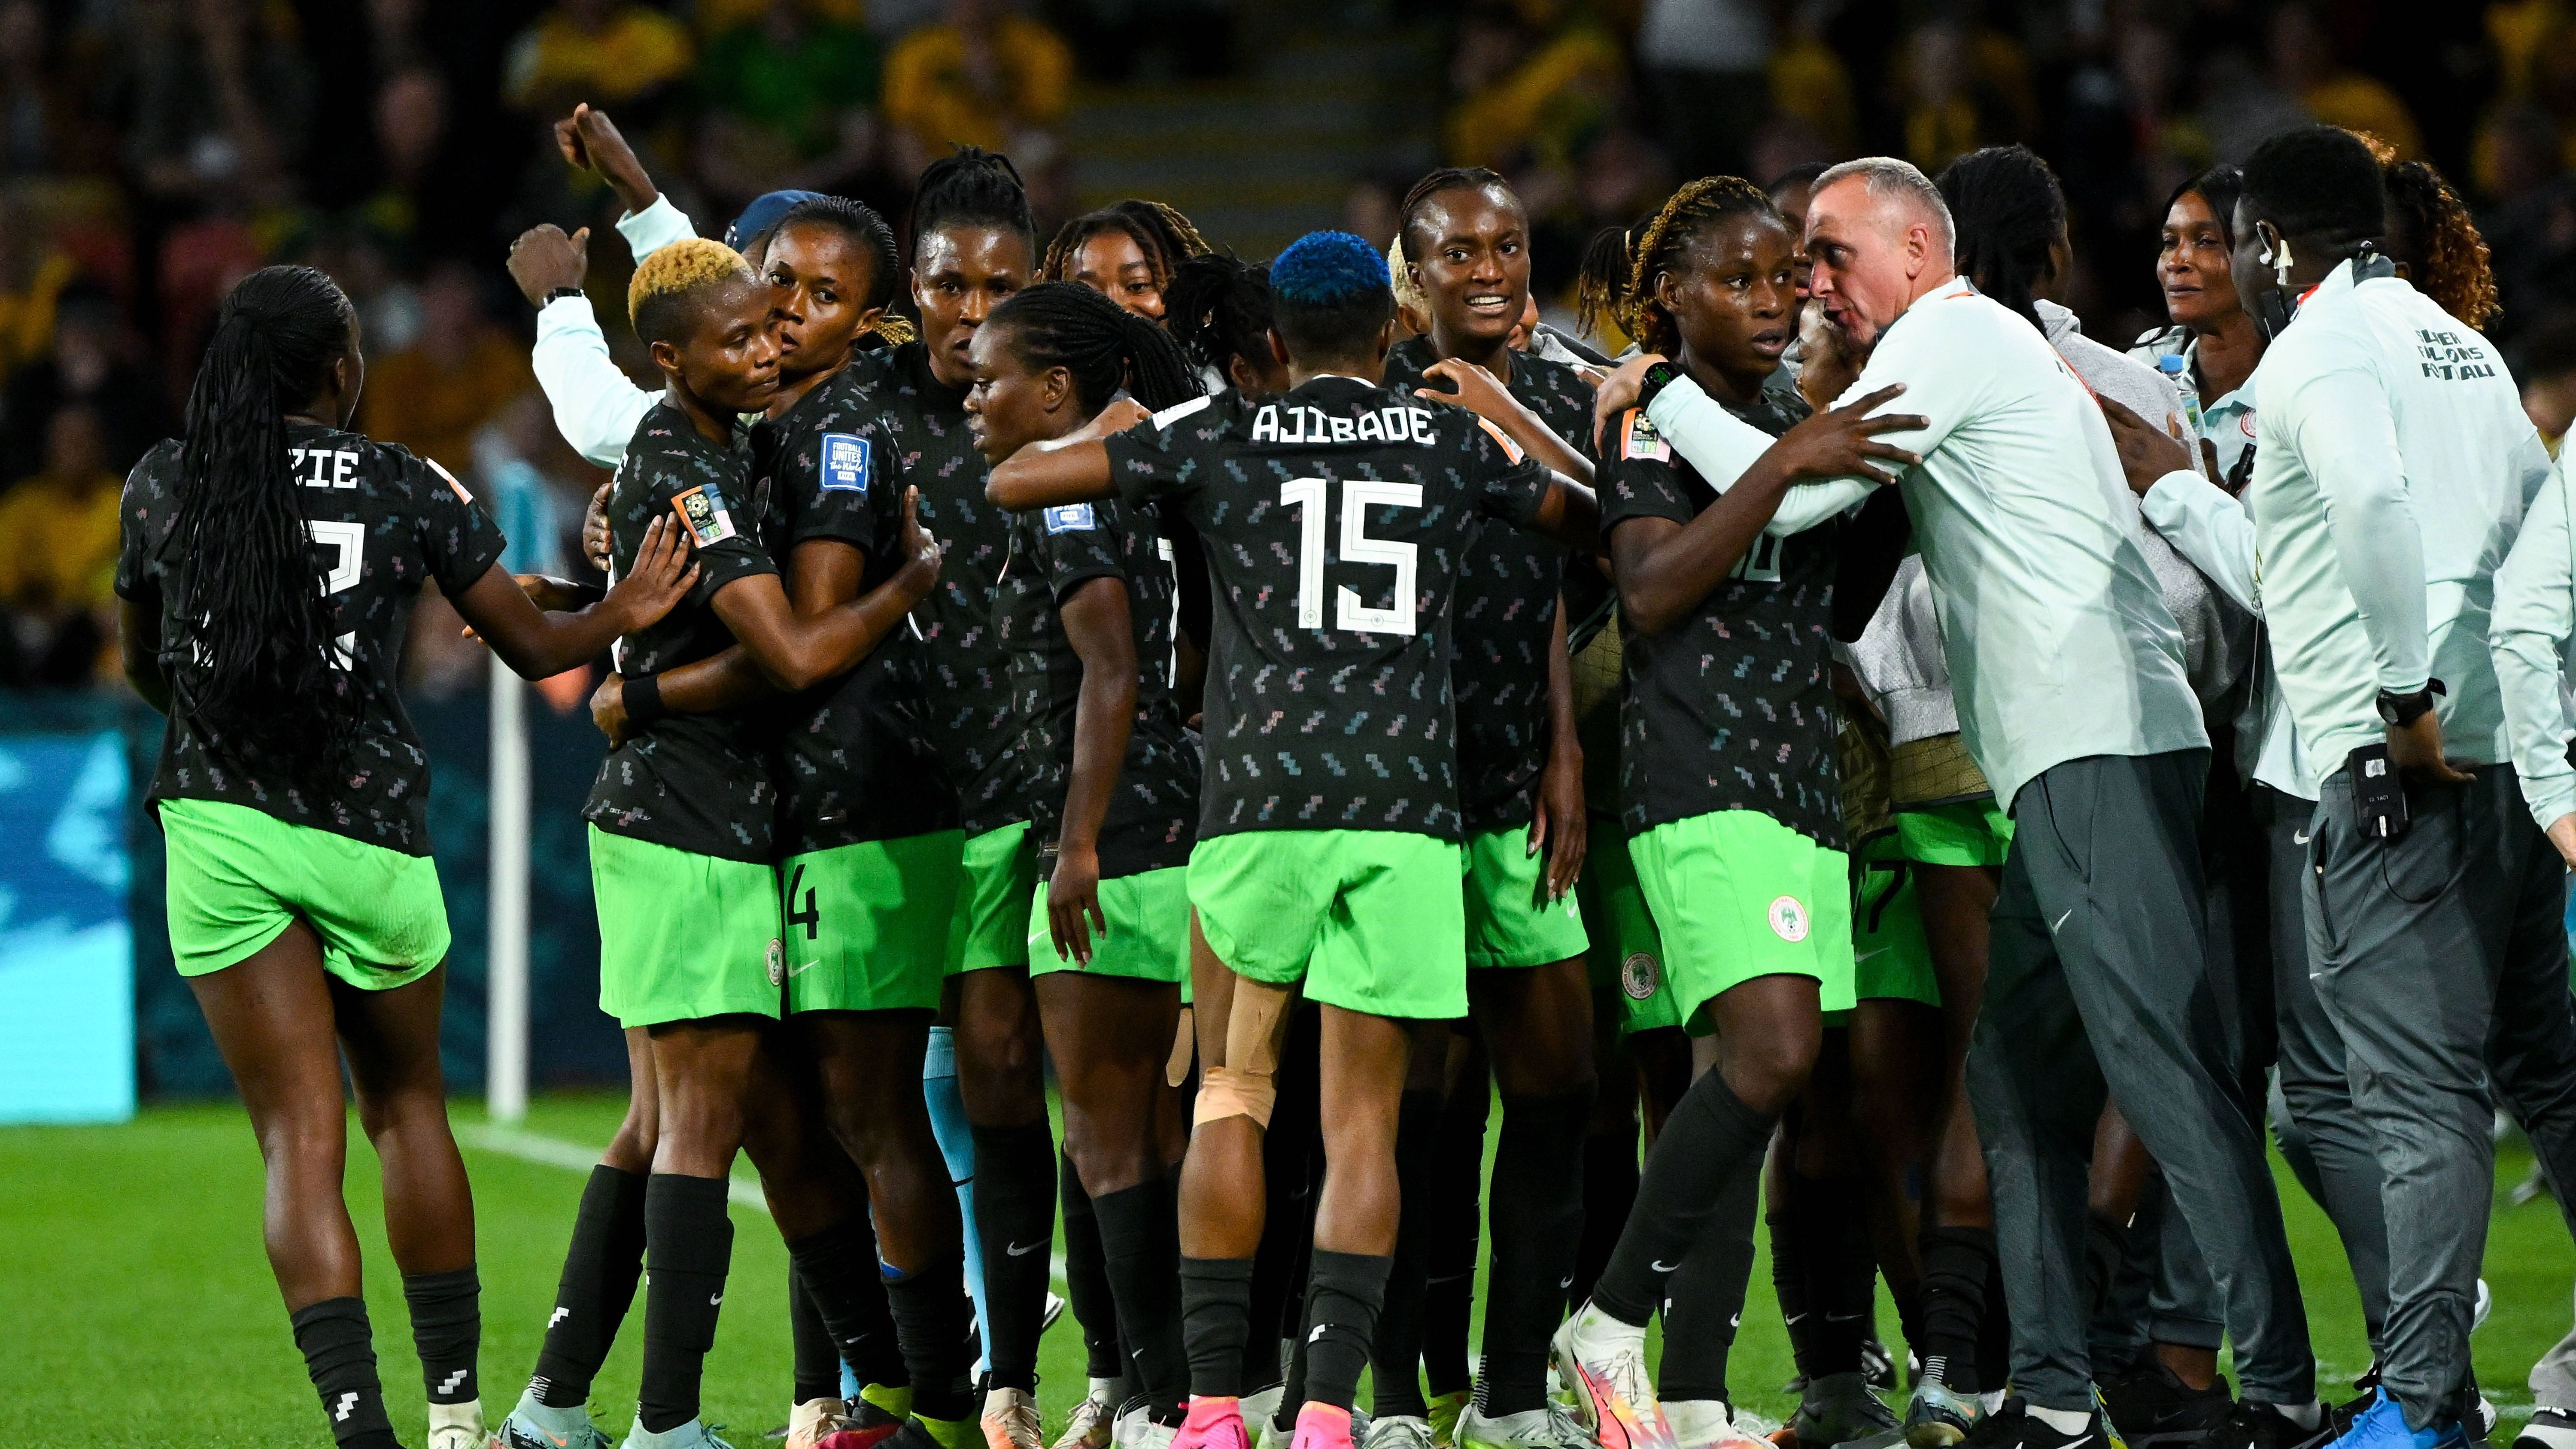 <strong>Gewinner: Nigeria<br></strong>Die Afrikanerinnen haben sich in einer Gruppe mit Kanada, Australien und Irland etwas überraschend durchsetzen können. Ein 0:0 gegen Olympiasieger Kanada trotz Unterzahl, ein 3:2-Sieg gegen die Gastgeberinnen aus Australien und letztlich das 0:0 gegen Irland ebneten den Weg ins Achtelfinale. Dort treffen die Nigerianerinnen auf England. Ein Highlight war dieses Turnier für sie jetzt schon.